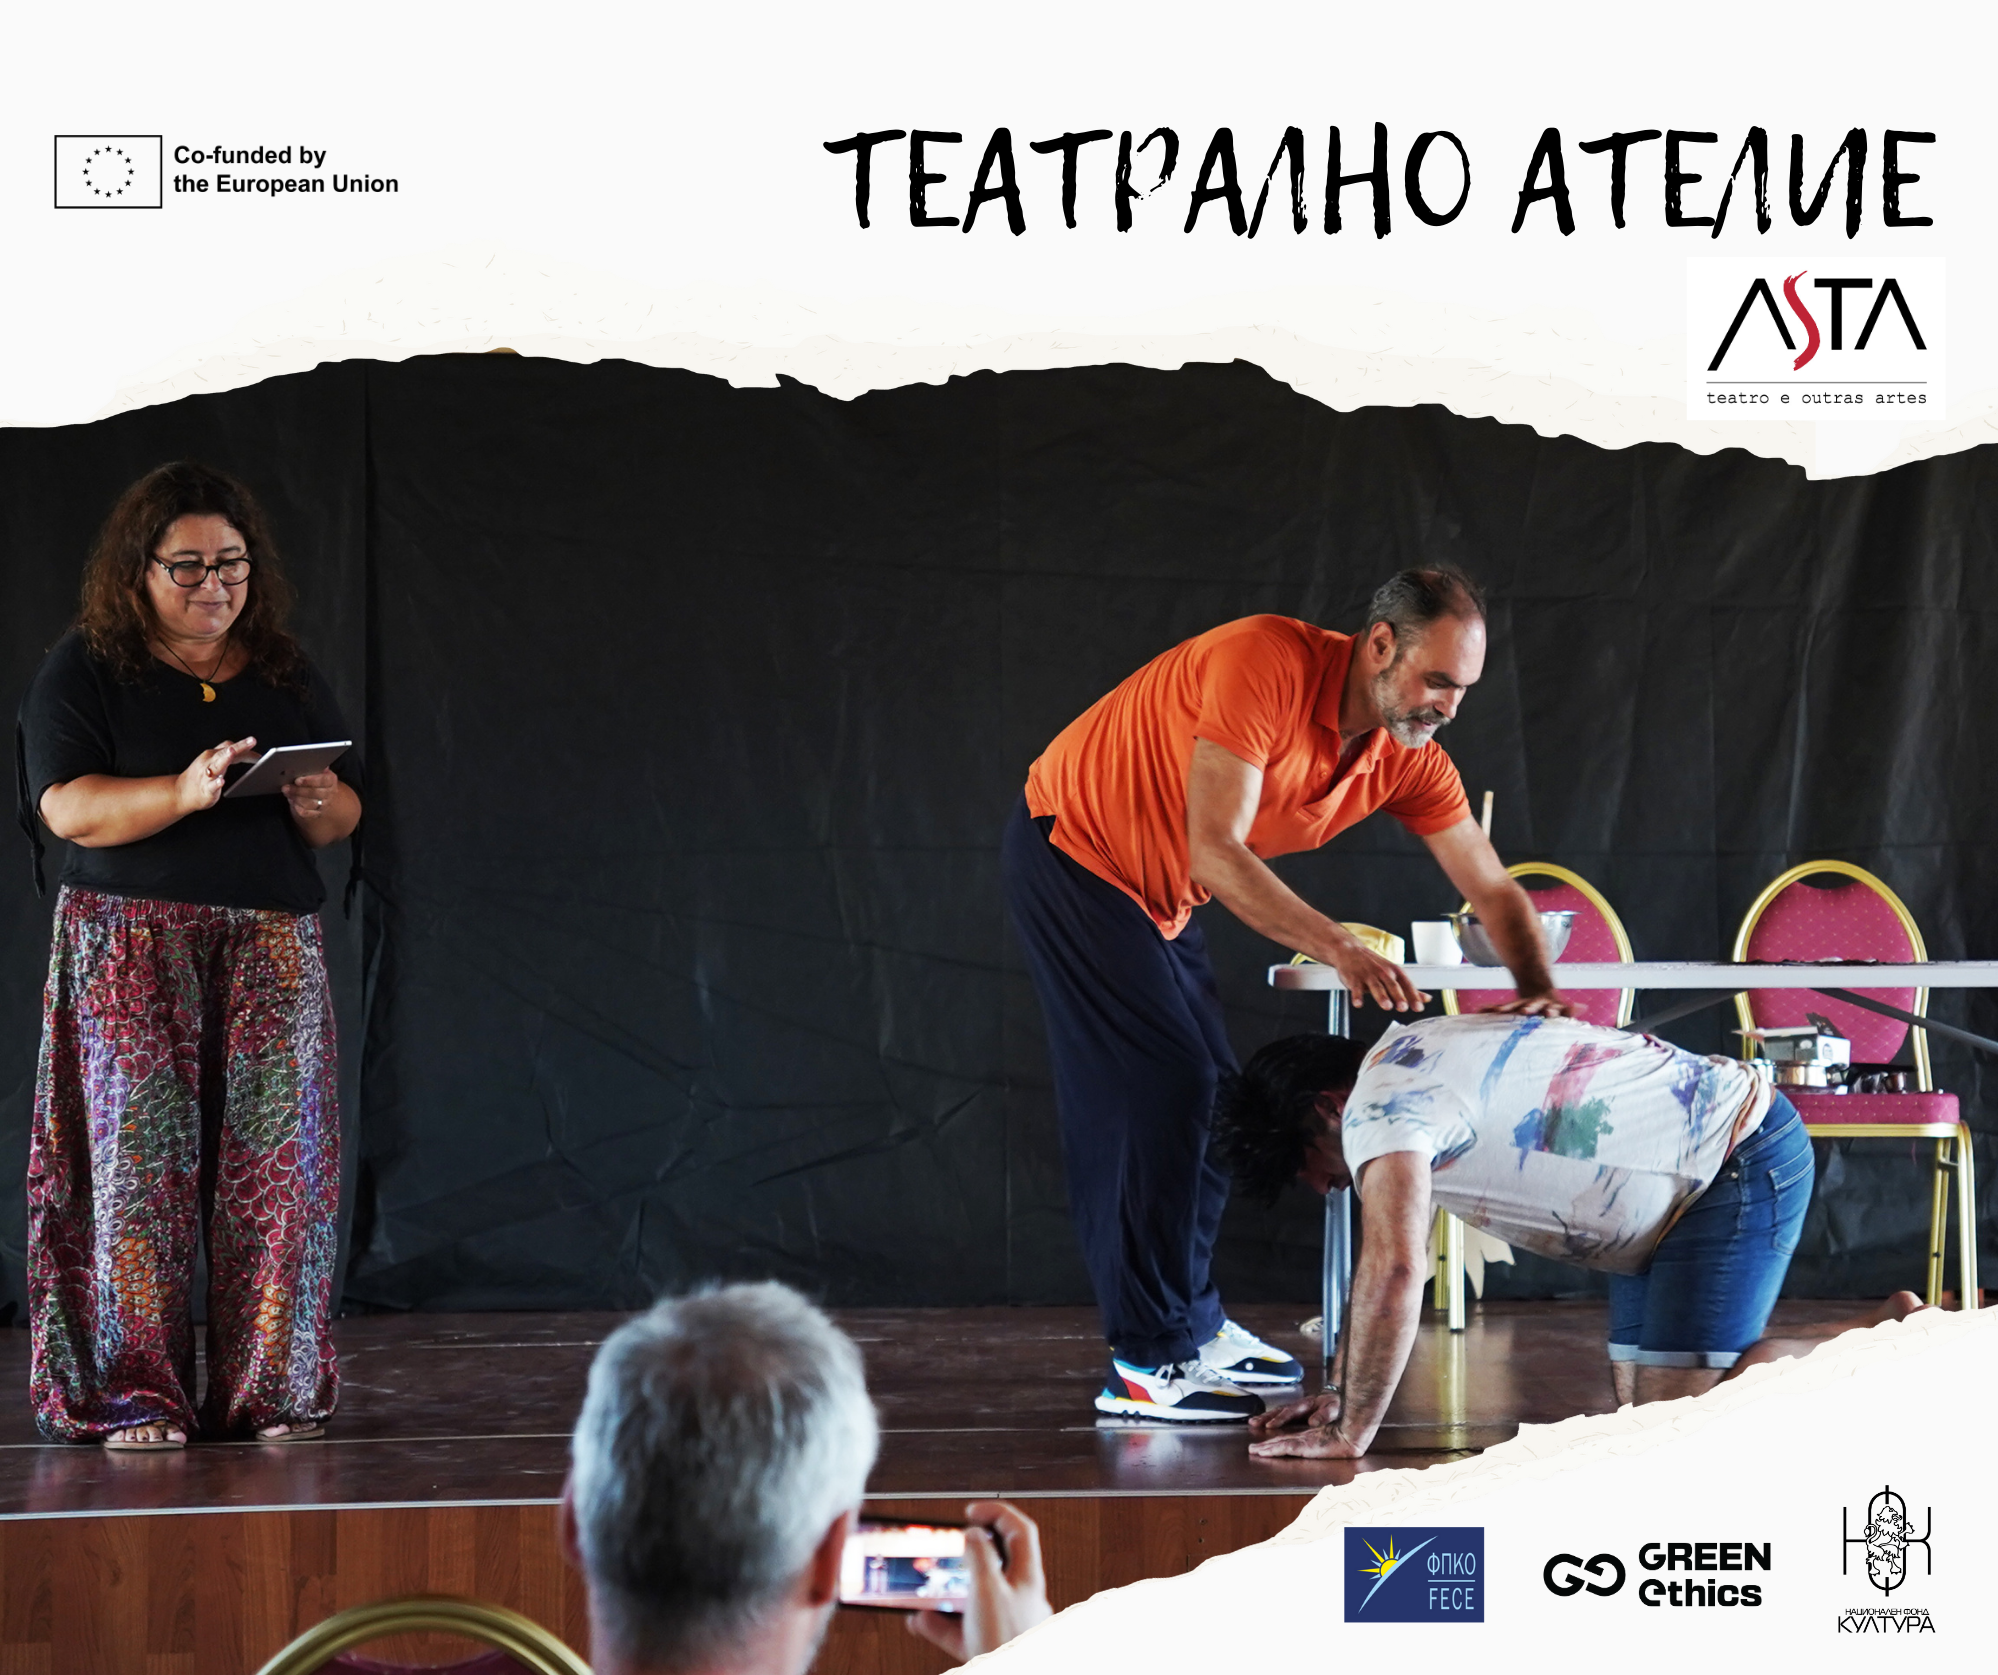 Покана за участие в международно театрално ателие, организирано в сътрудничество с португалската театрална компания ASTA